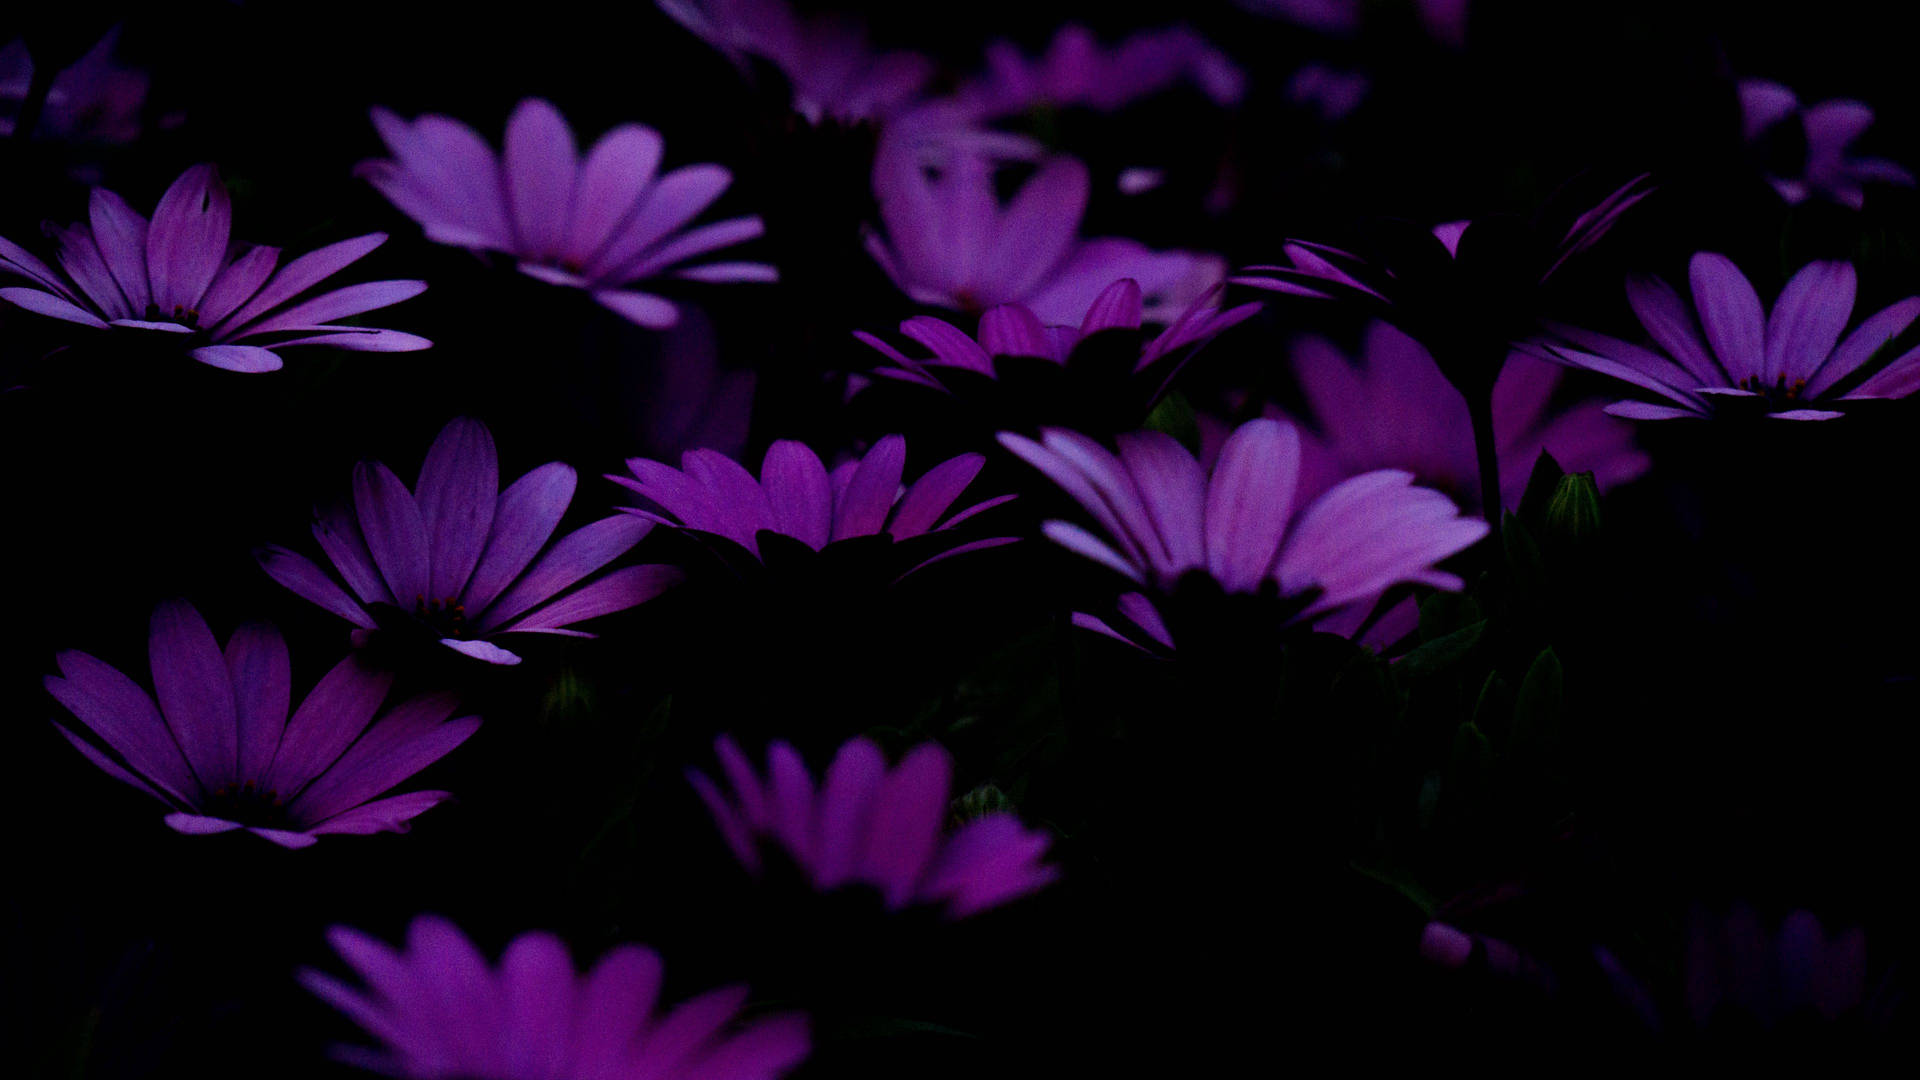 An Aesthetically Appealing Purple Flower Wallpaper